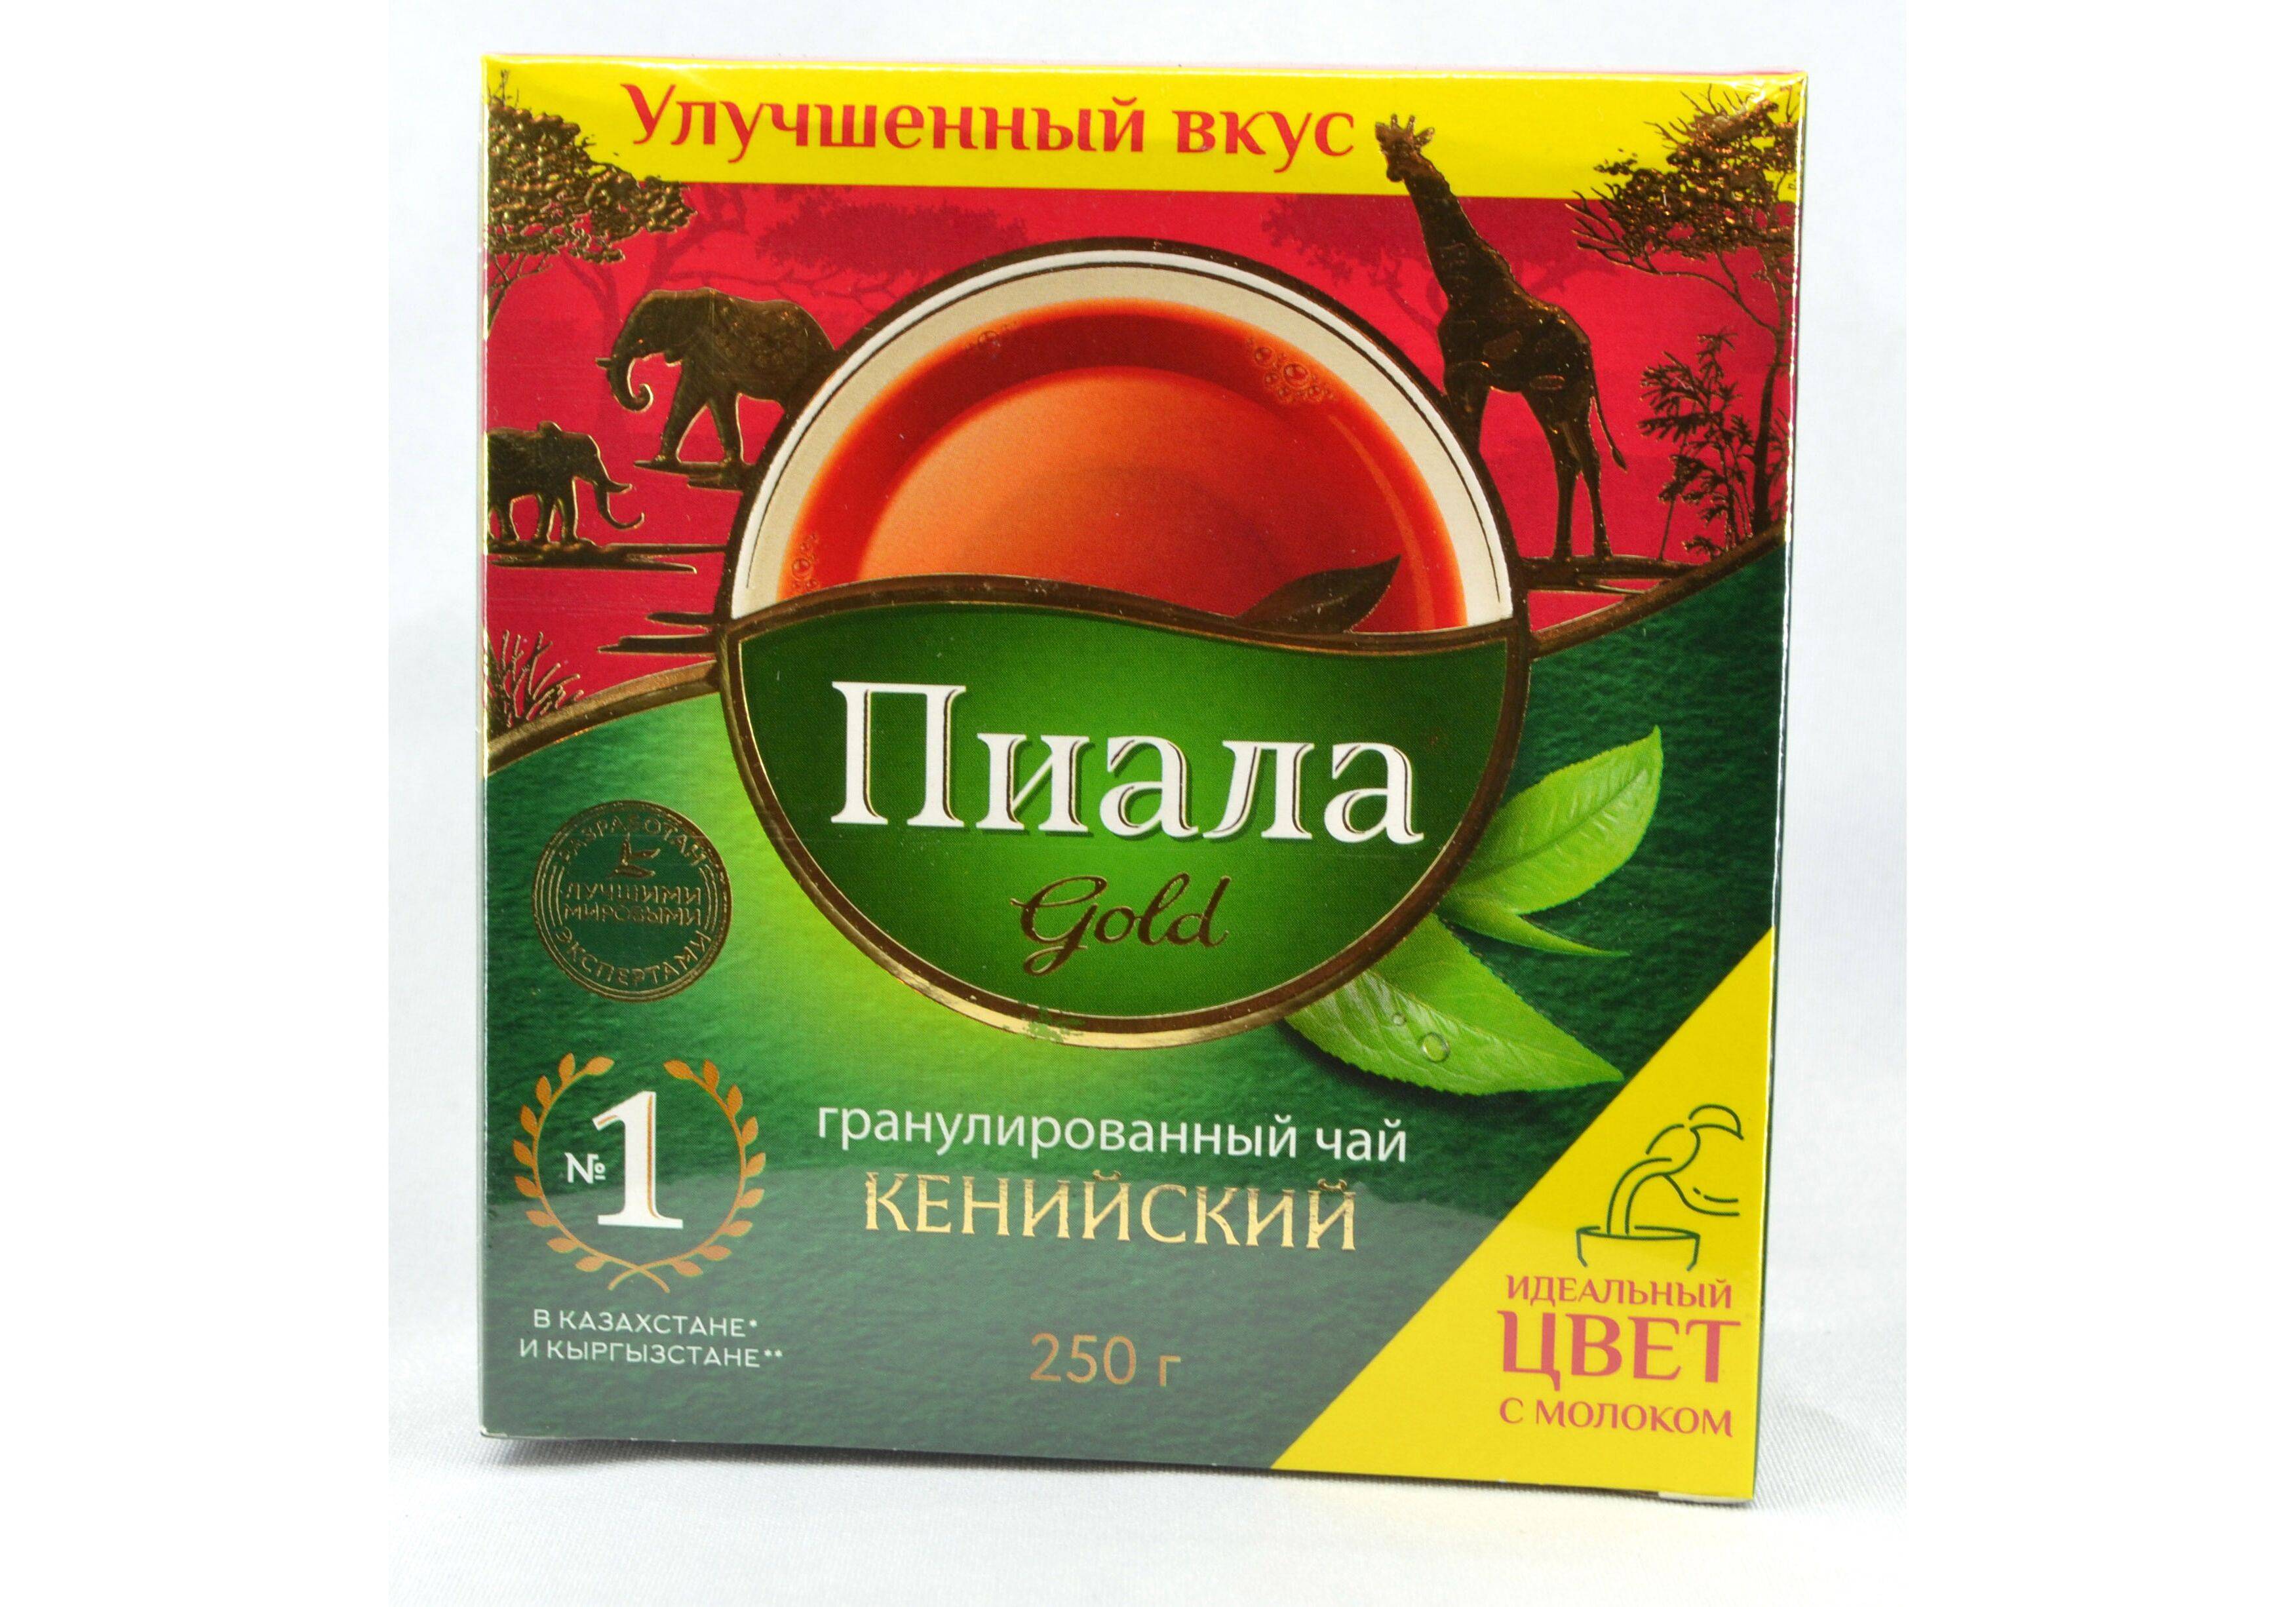 Казахстанский чай, производство чая, особенности чаепития